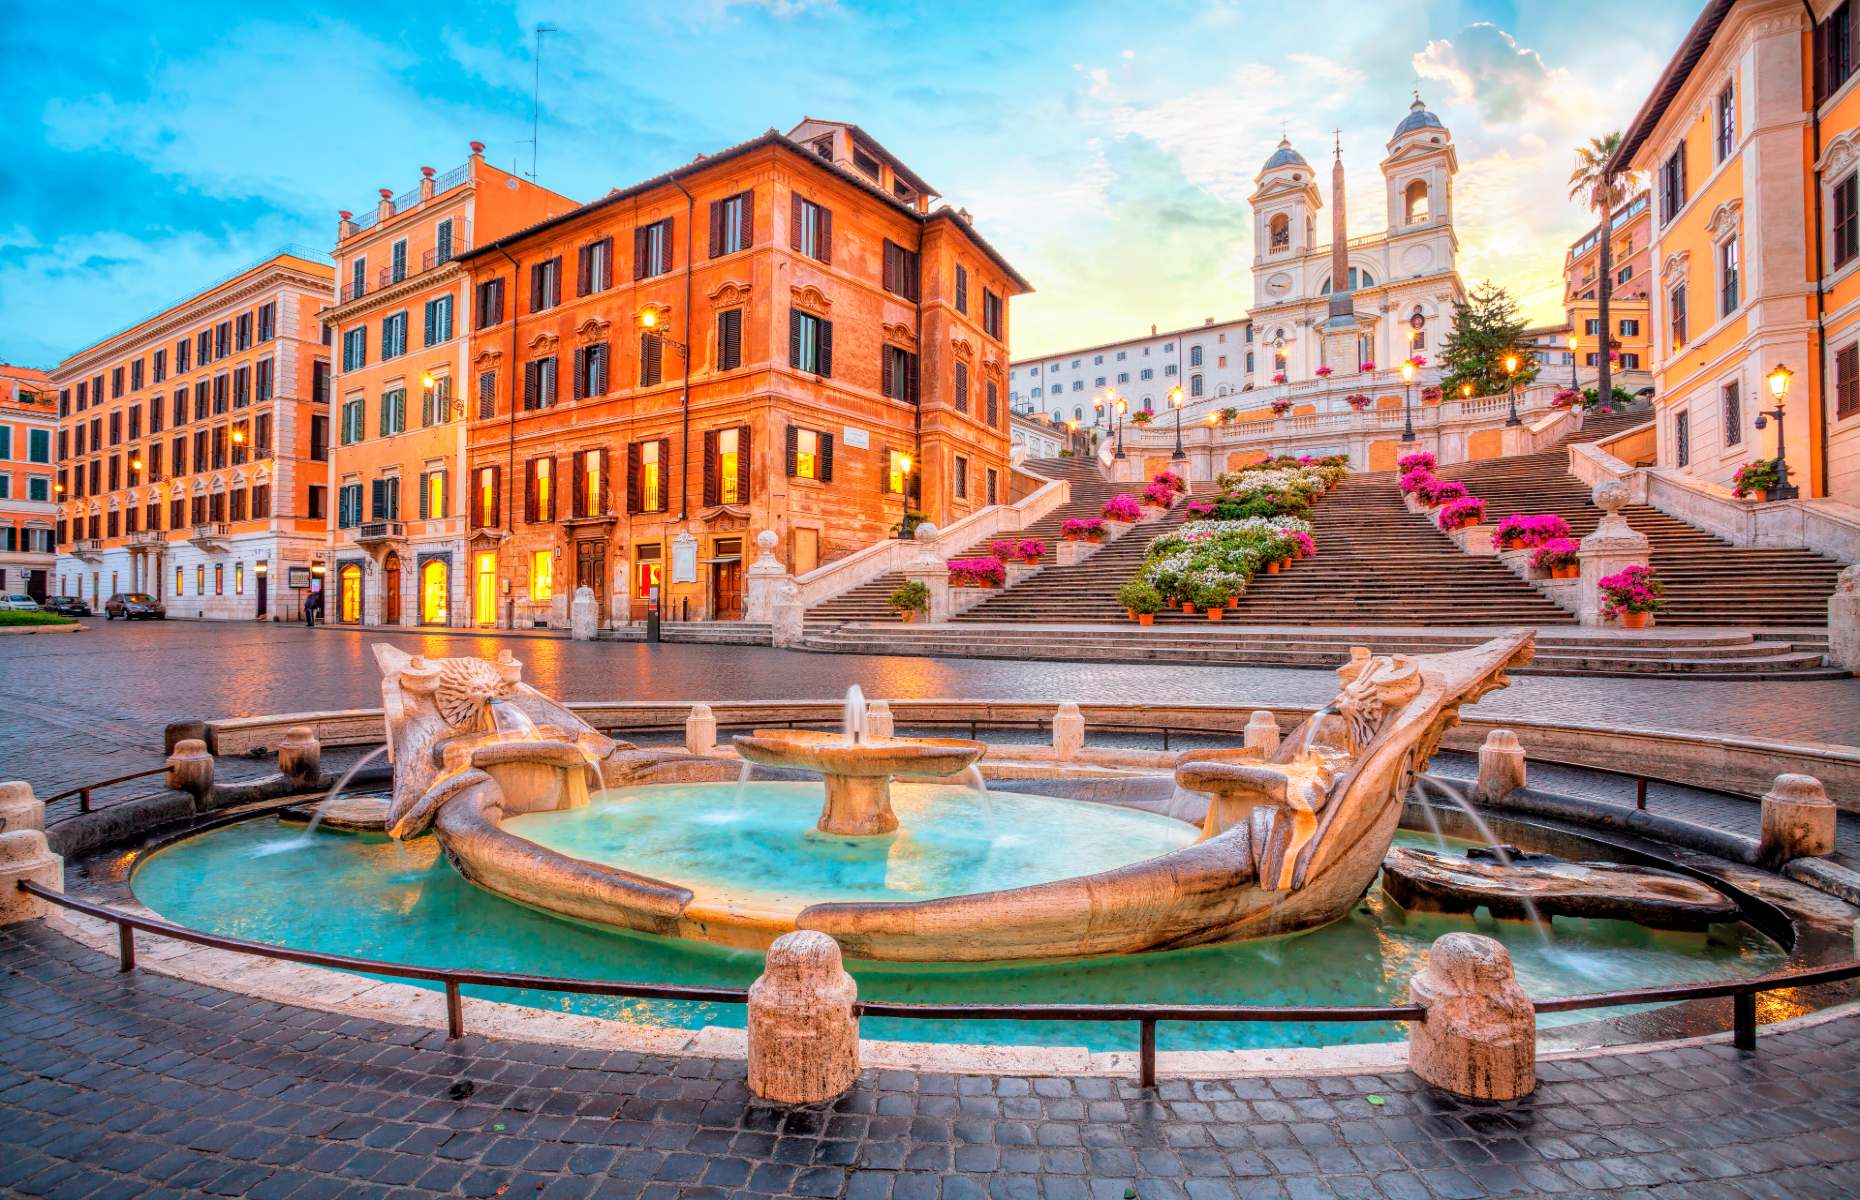 Rome (Image: Vladimir Sazonov/Shutterstock)